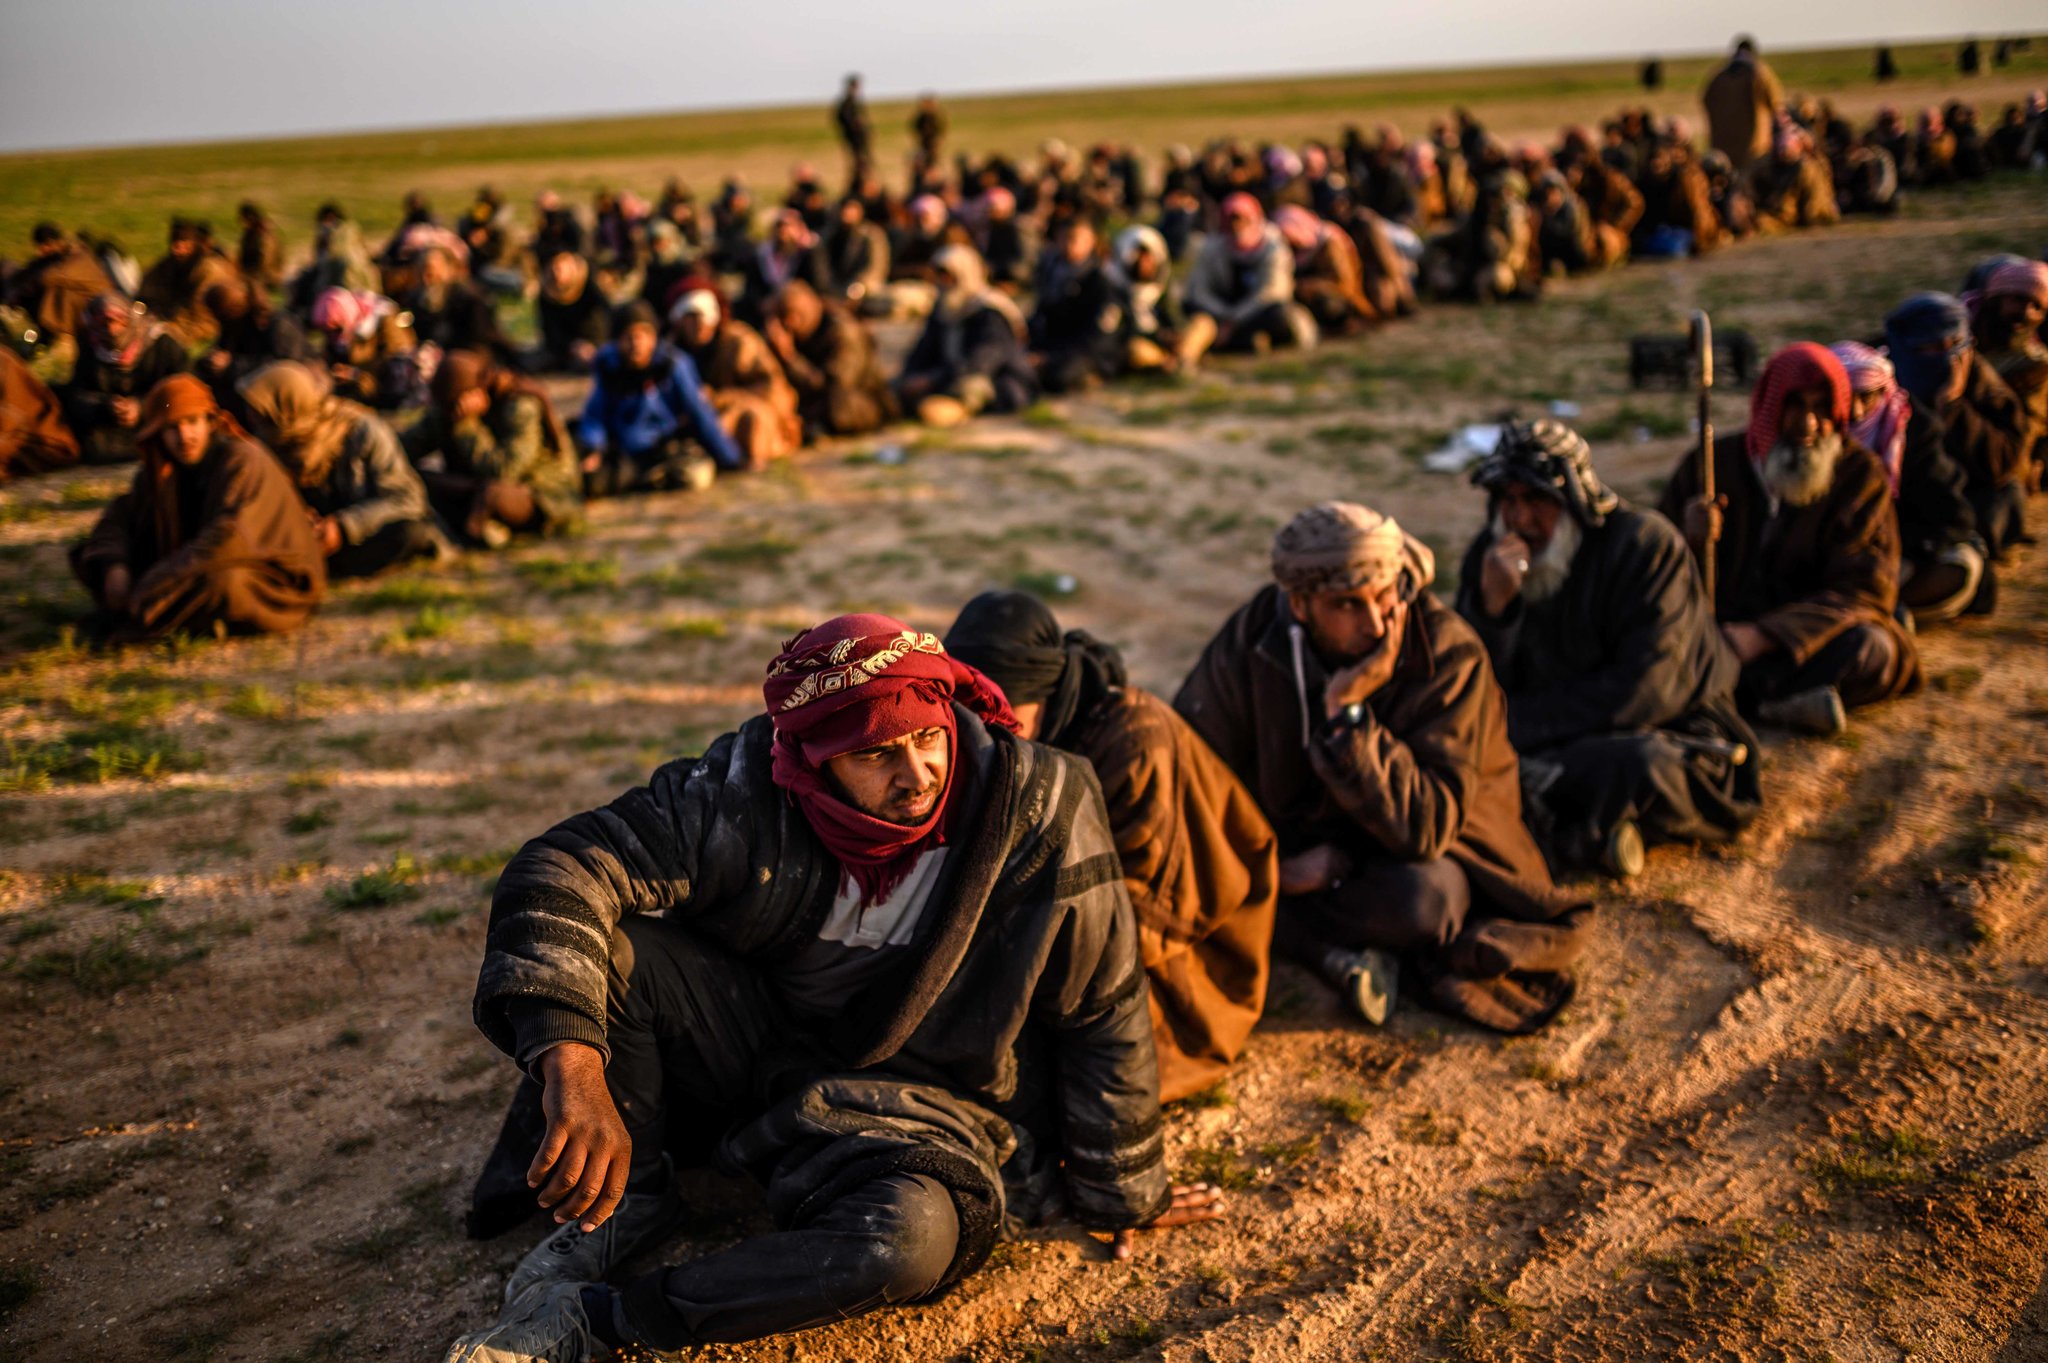 مخيم الهول ـ إعادة تنظيم "داعش" لصفوفه